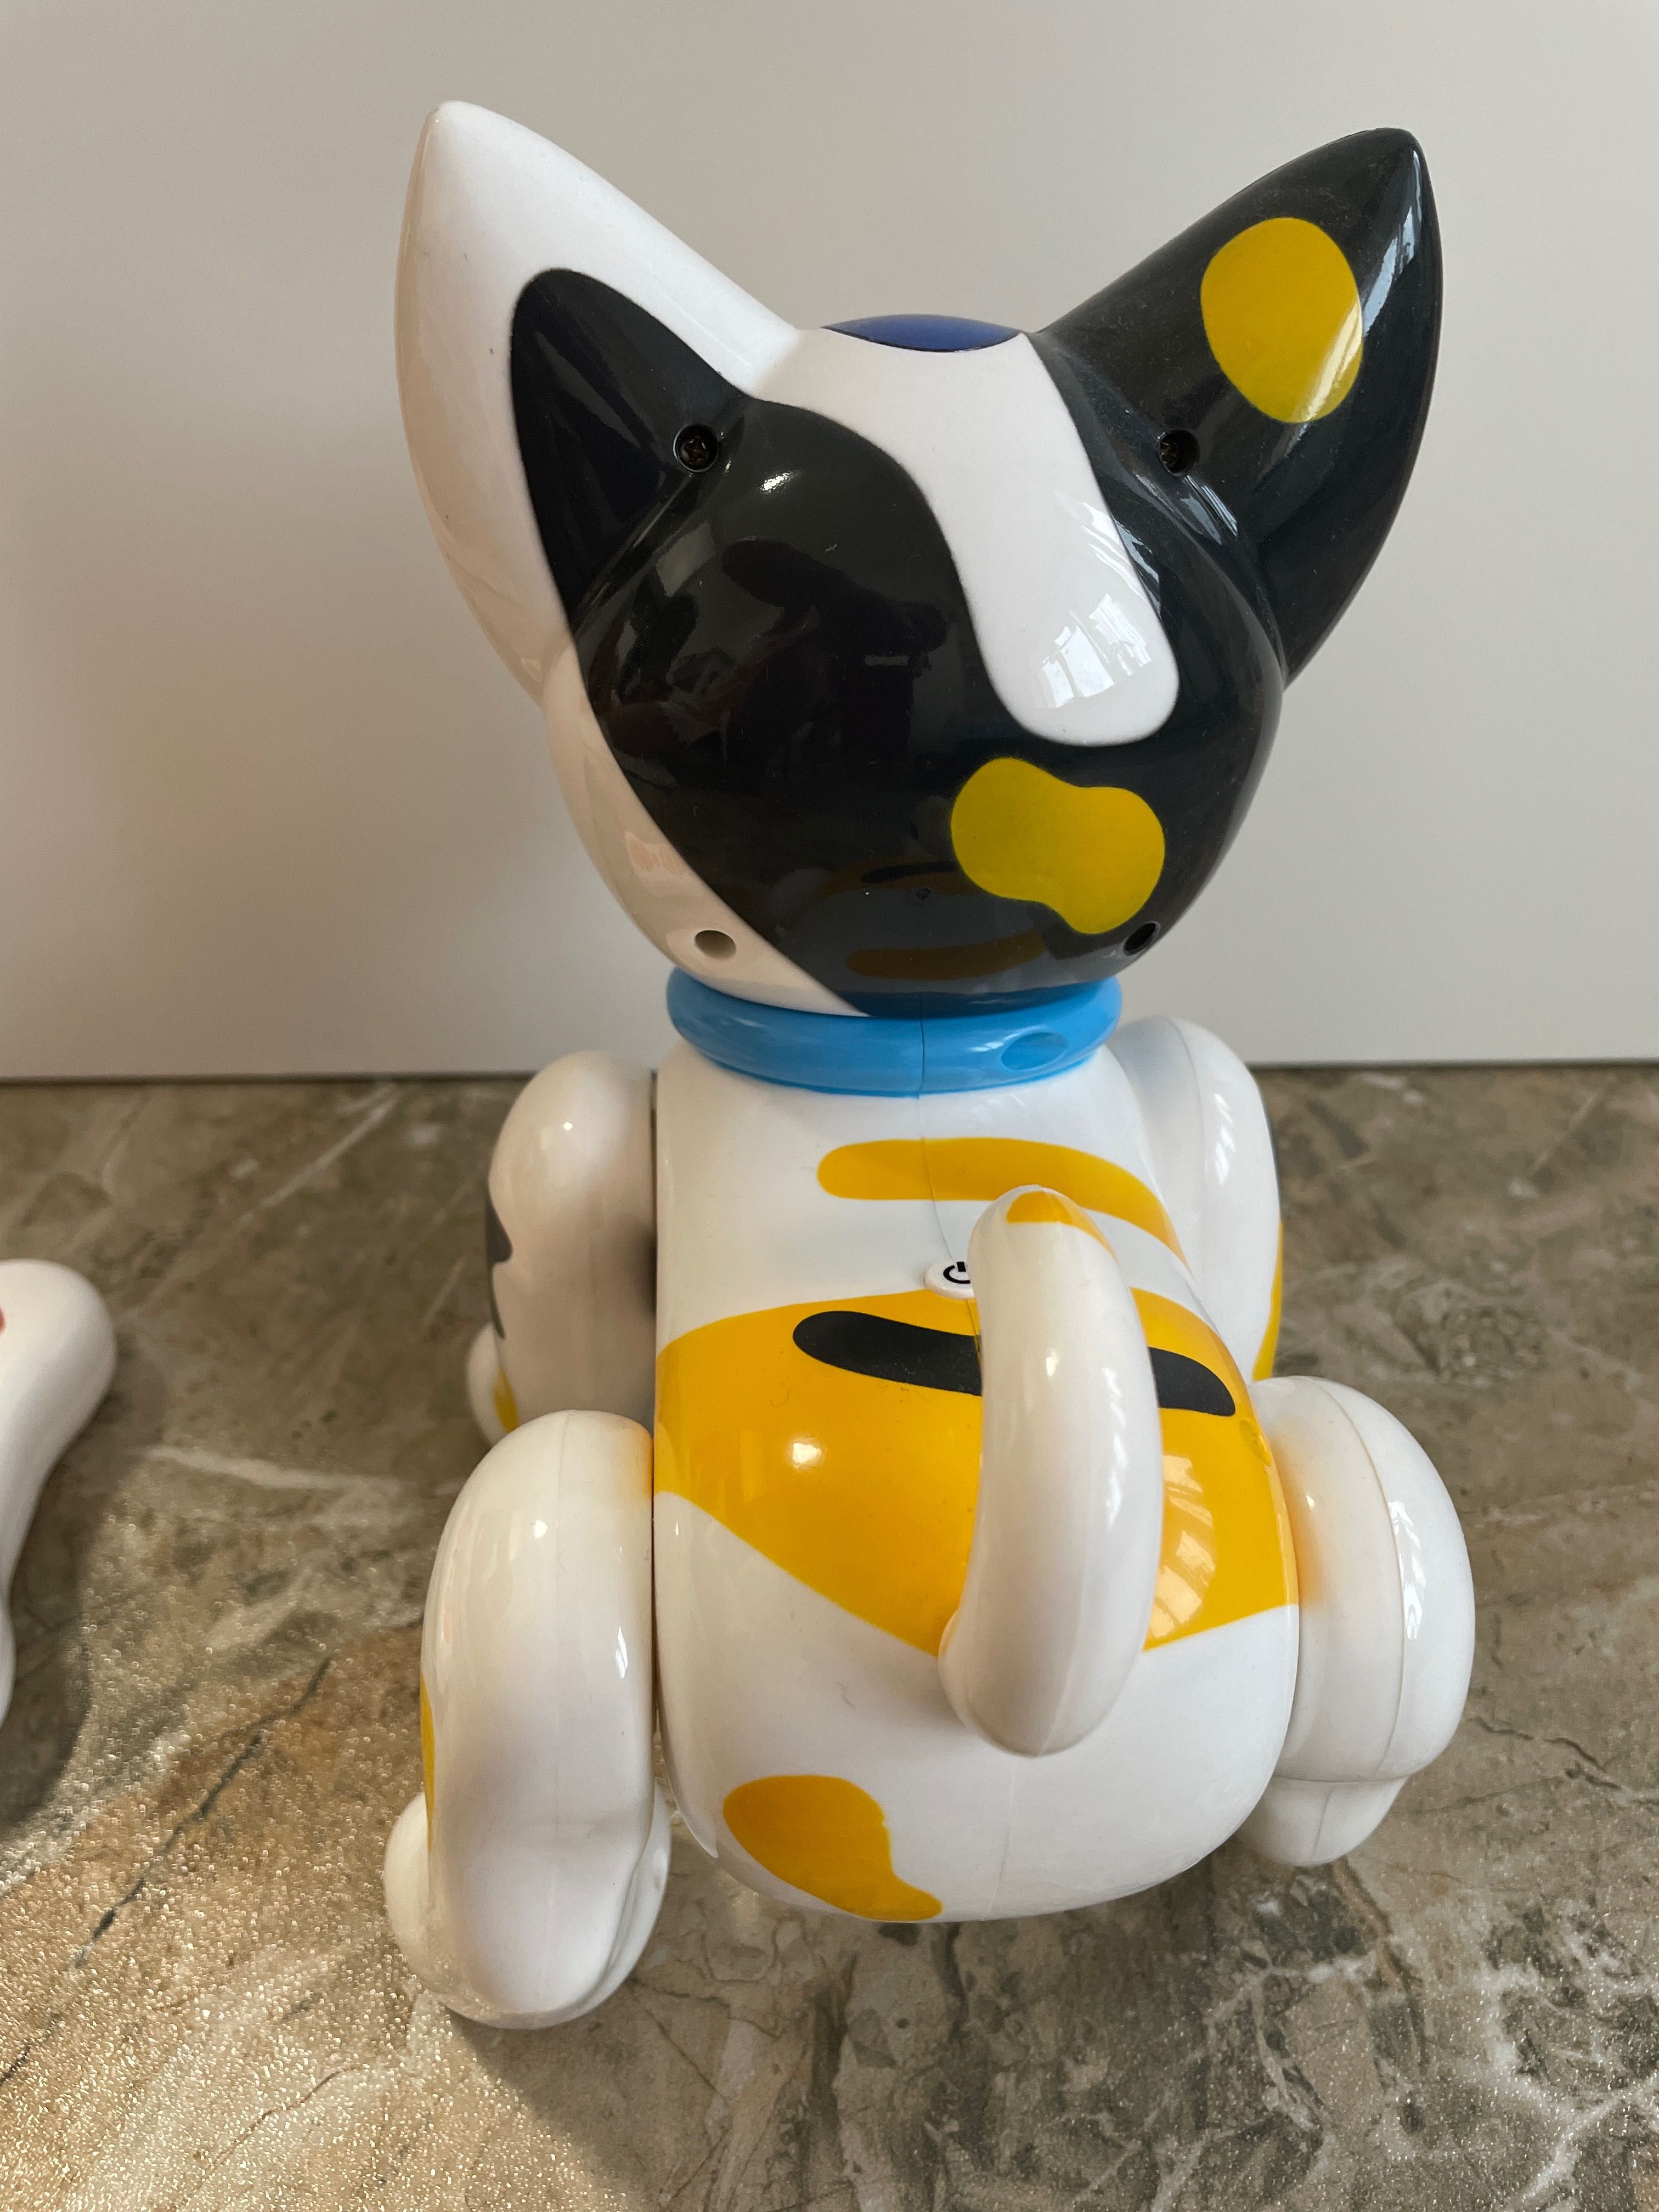 Іграшка робот Amwel котик робот інтерактивна іграшка на пульті Sha Sha